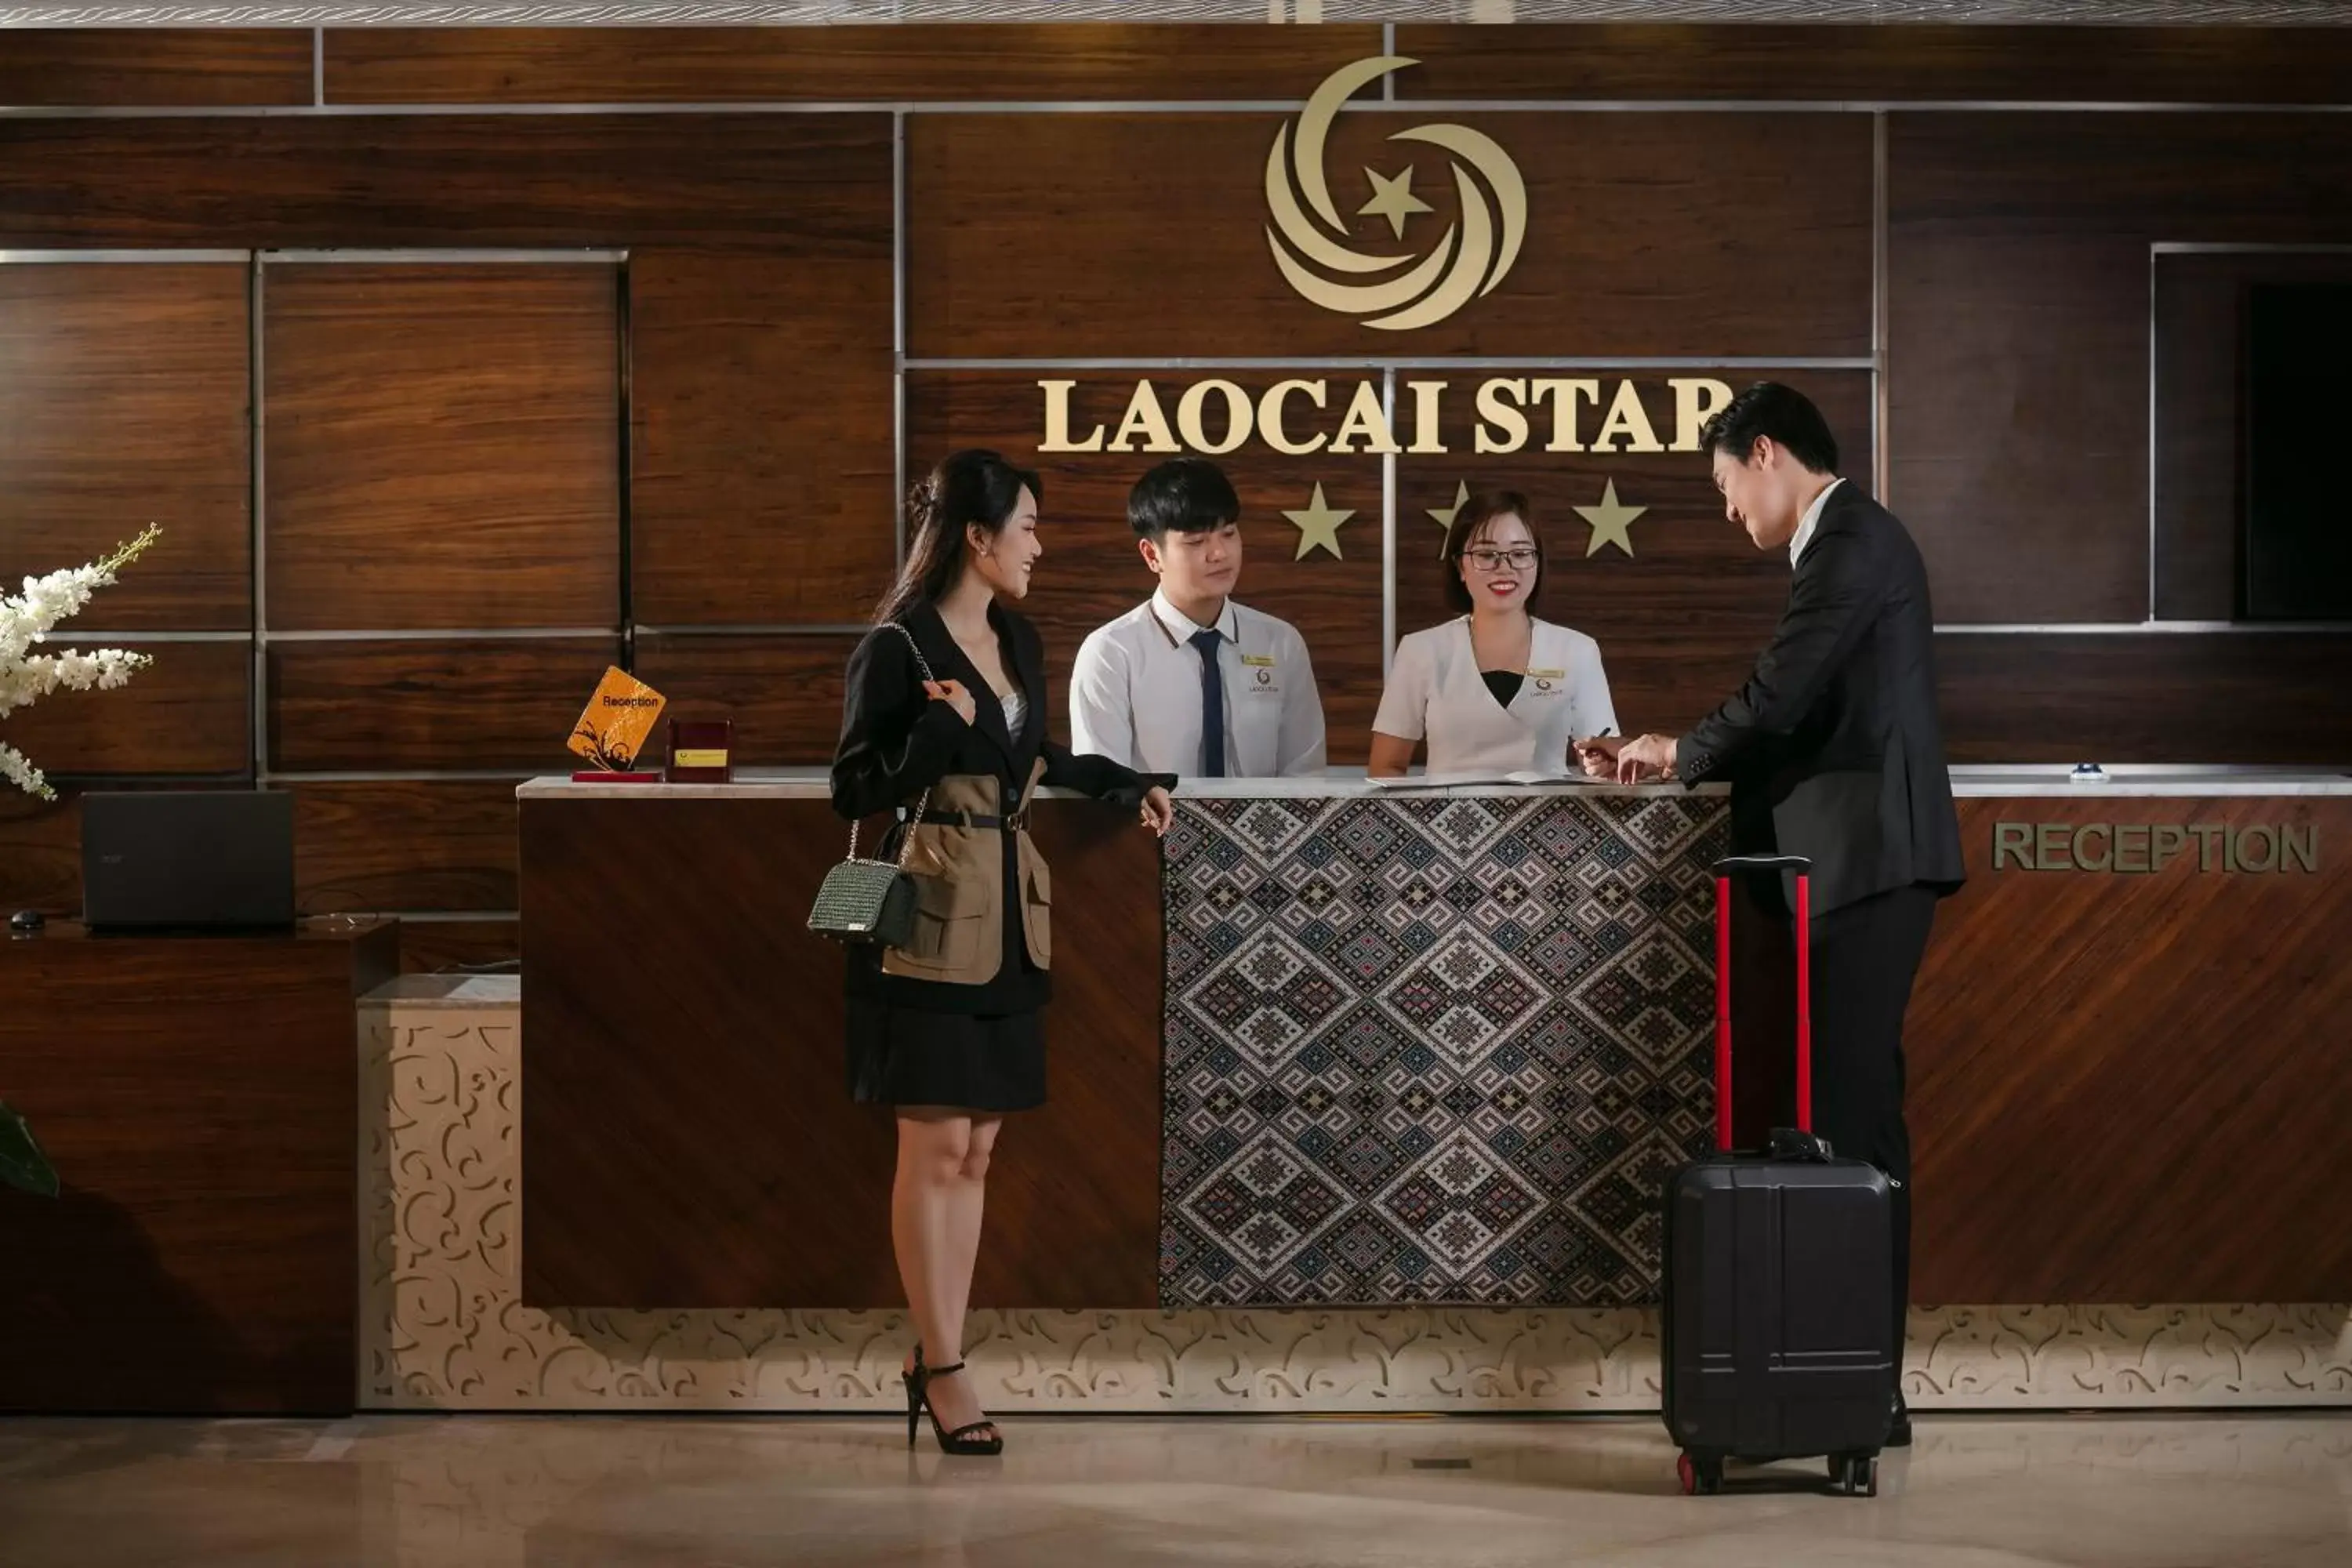 Staff in Lao Cai Star Hotel